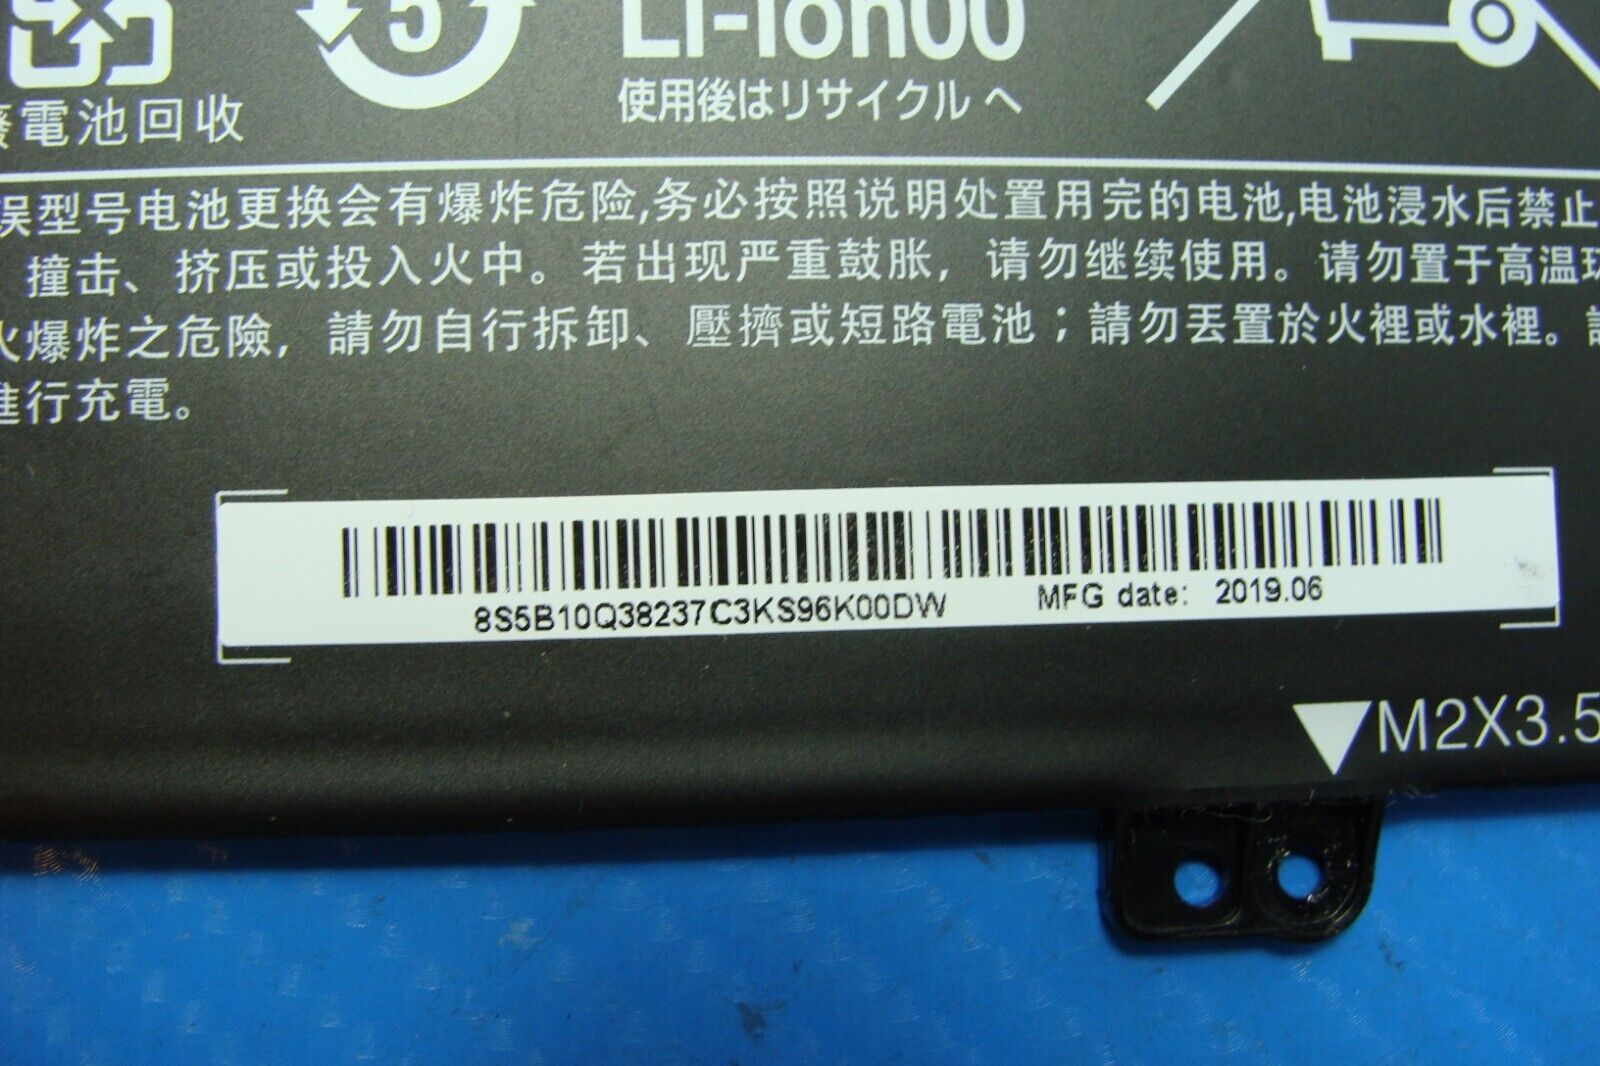 Lenovo Yoga 730-13IKB 13.3